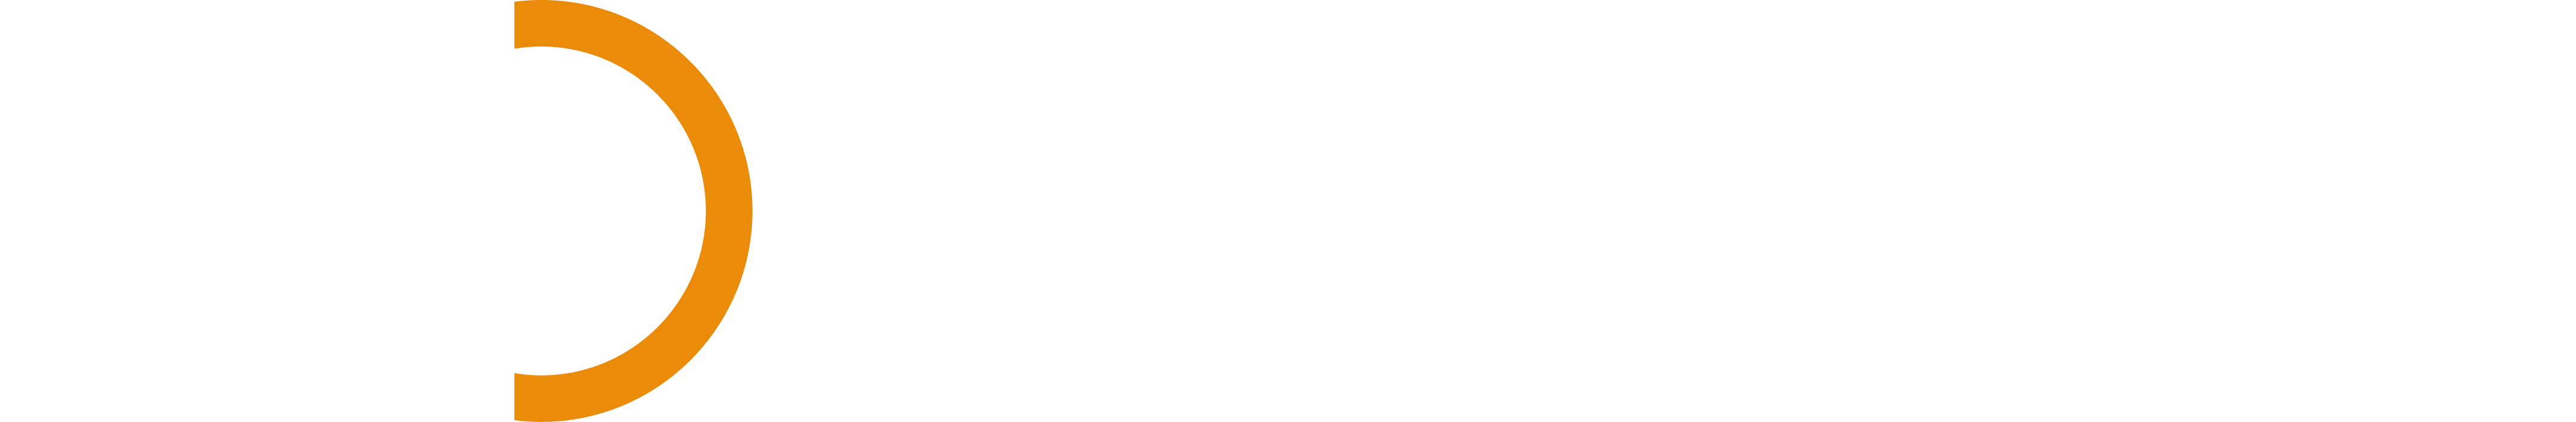 Pearson Ham Group